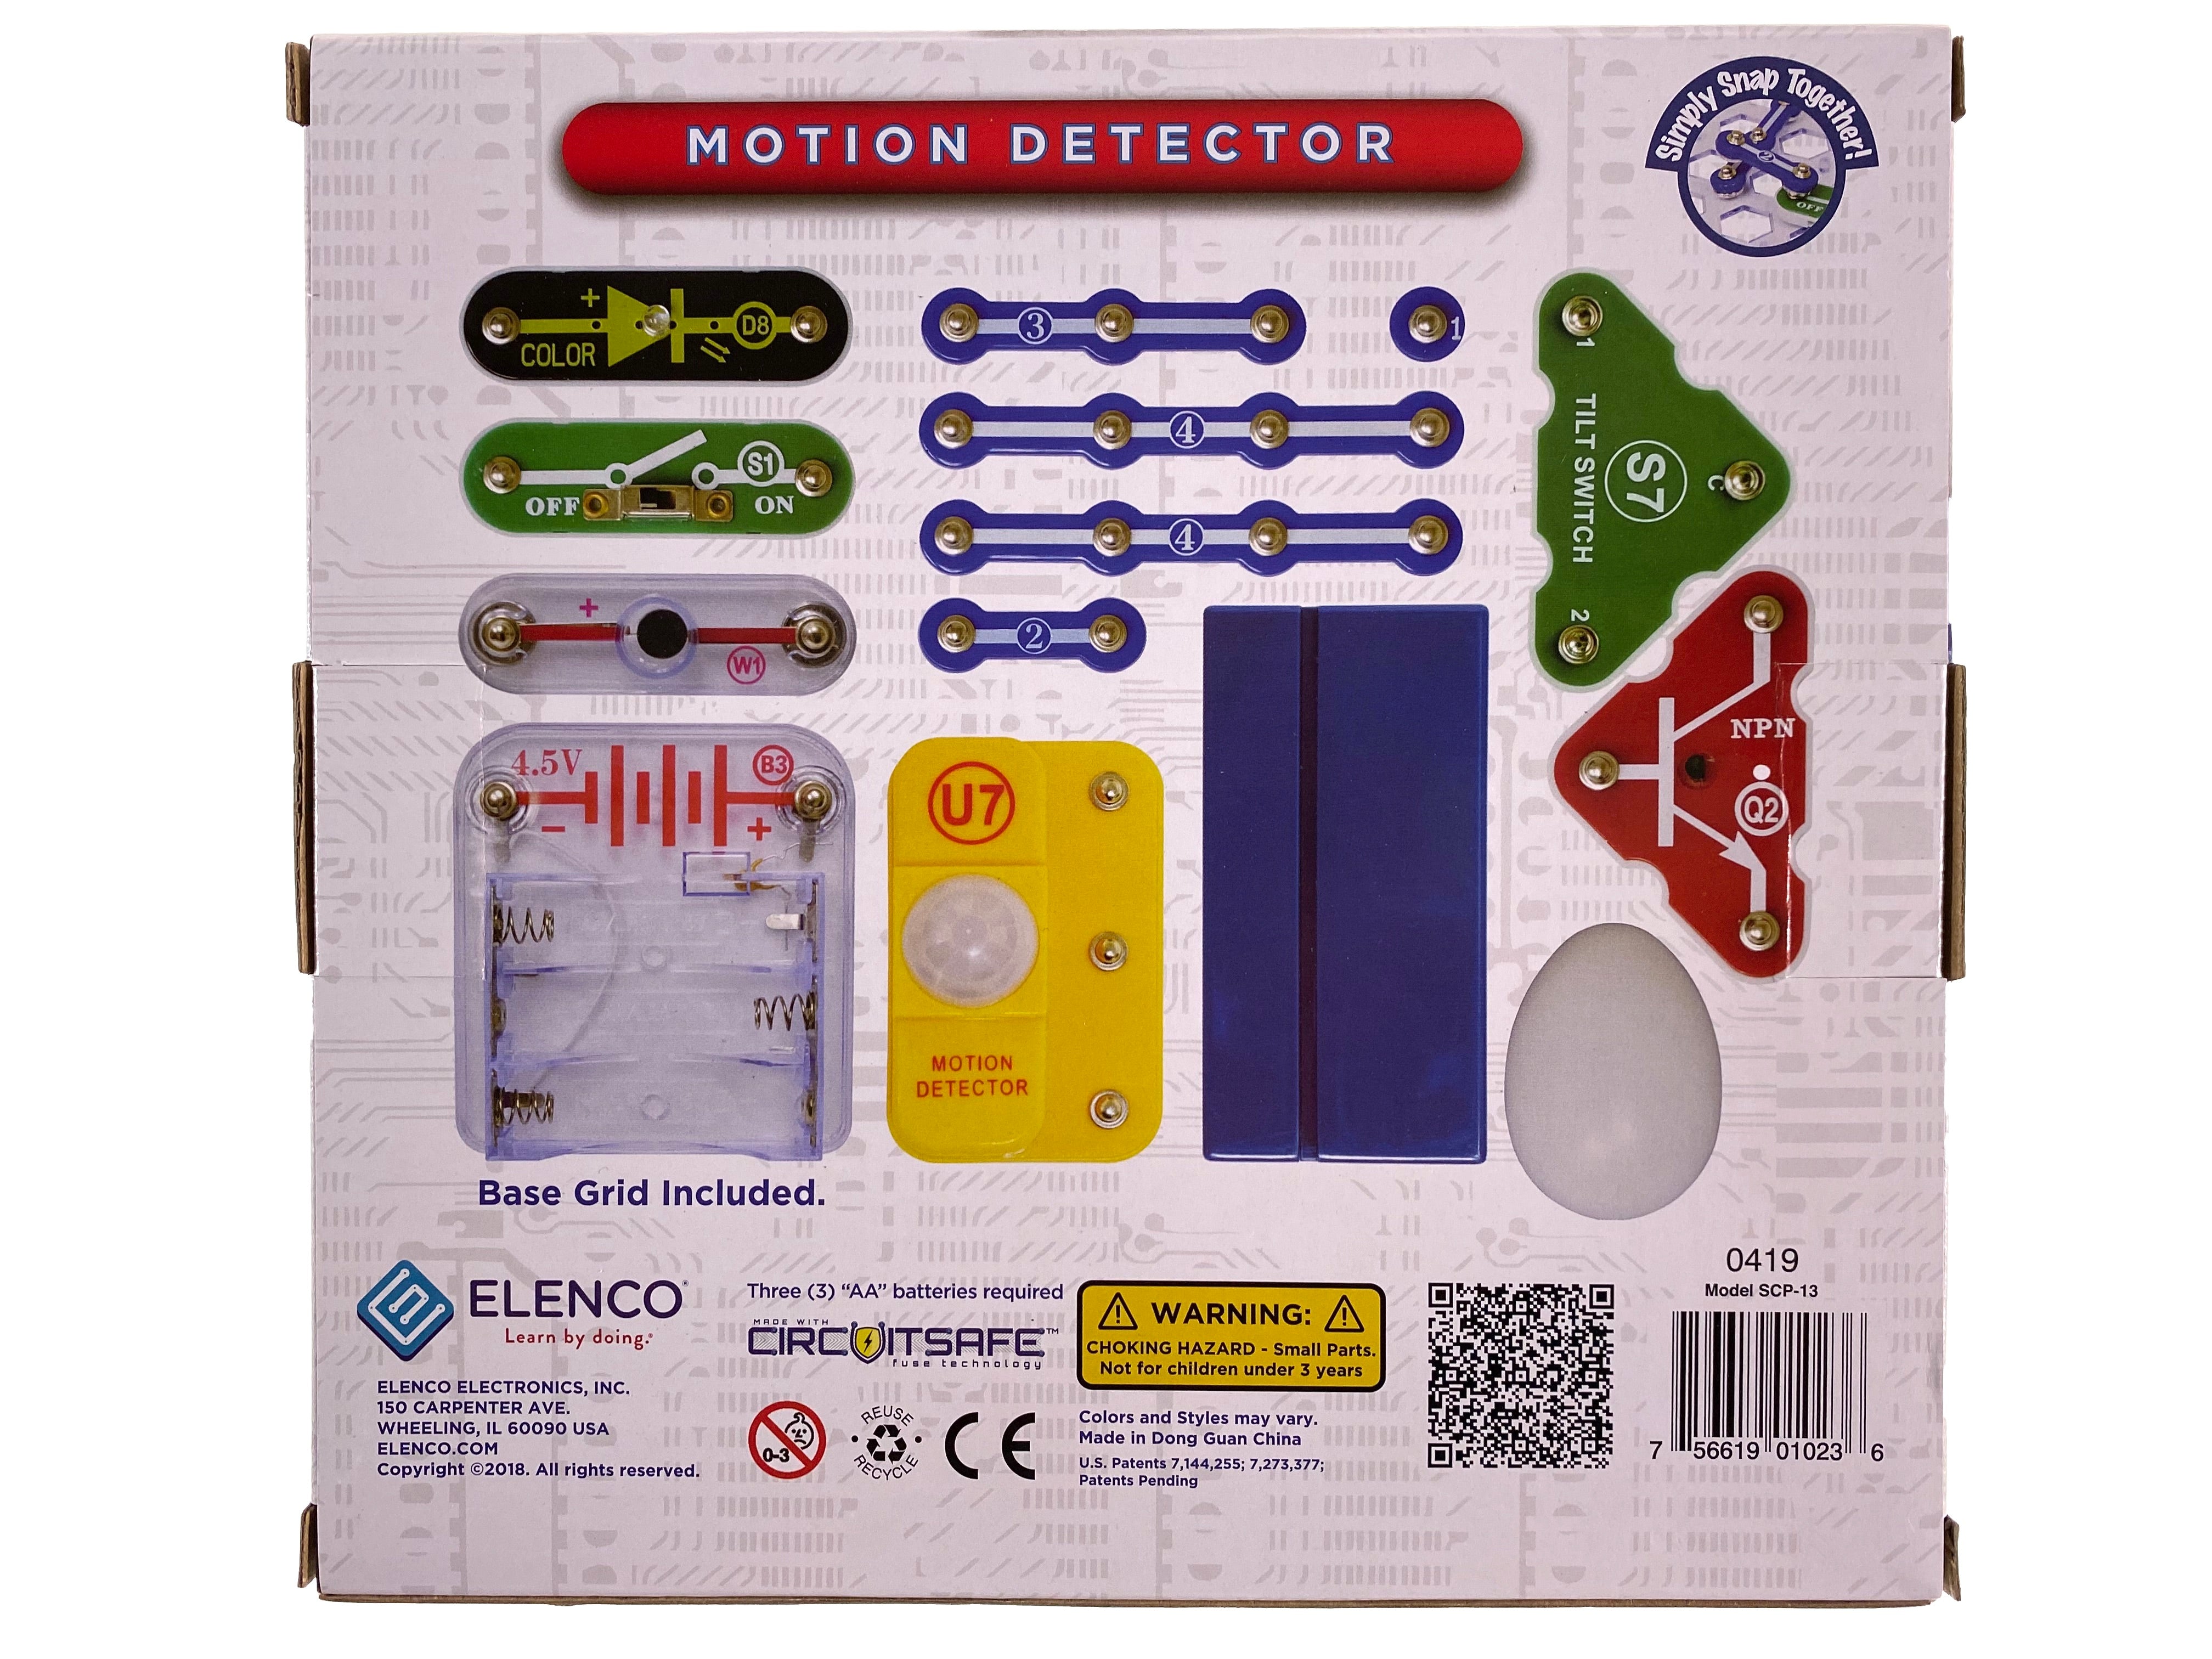 Snap Circuits - Motion Detector    